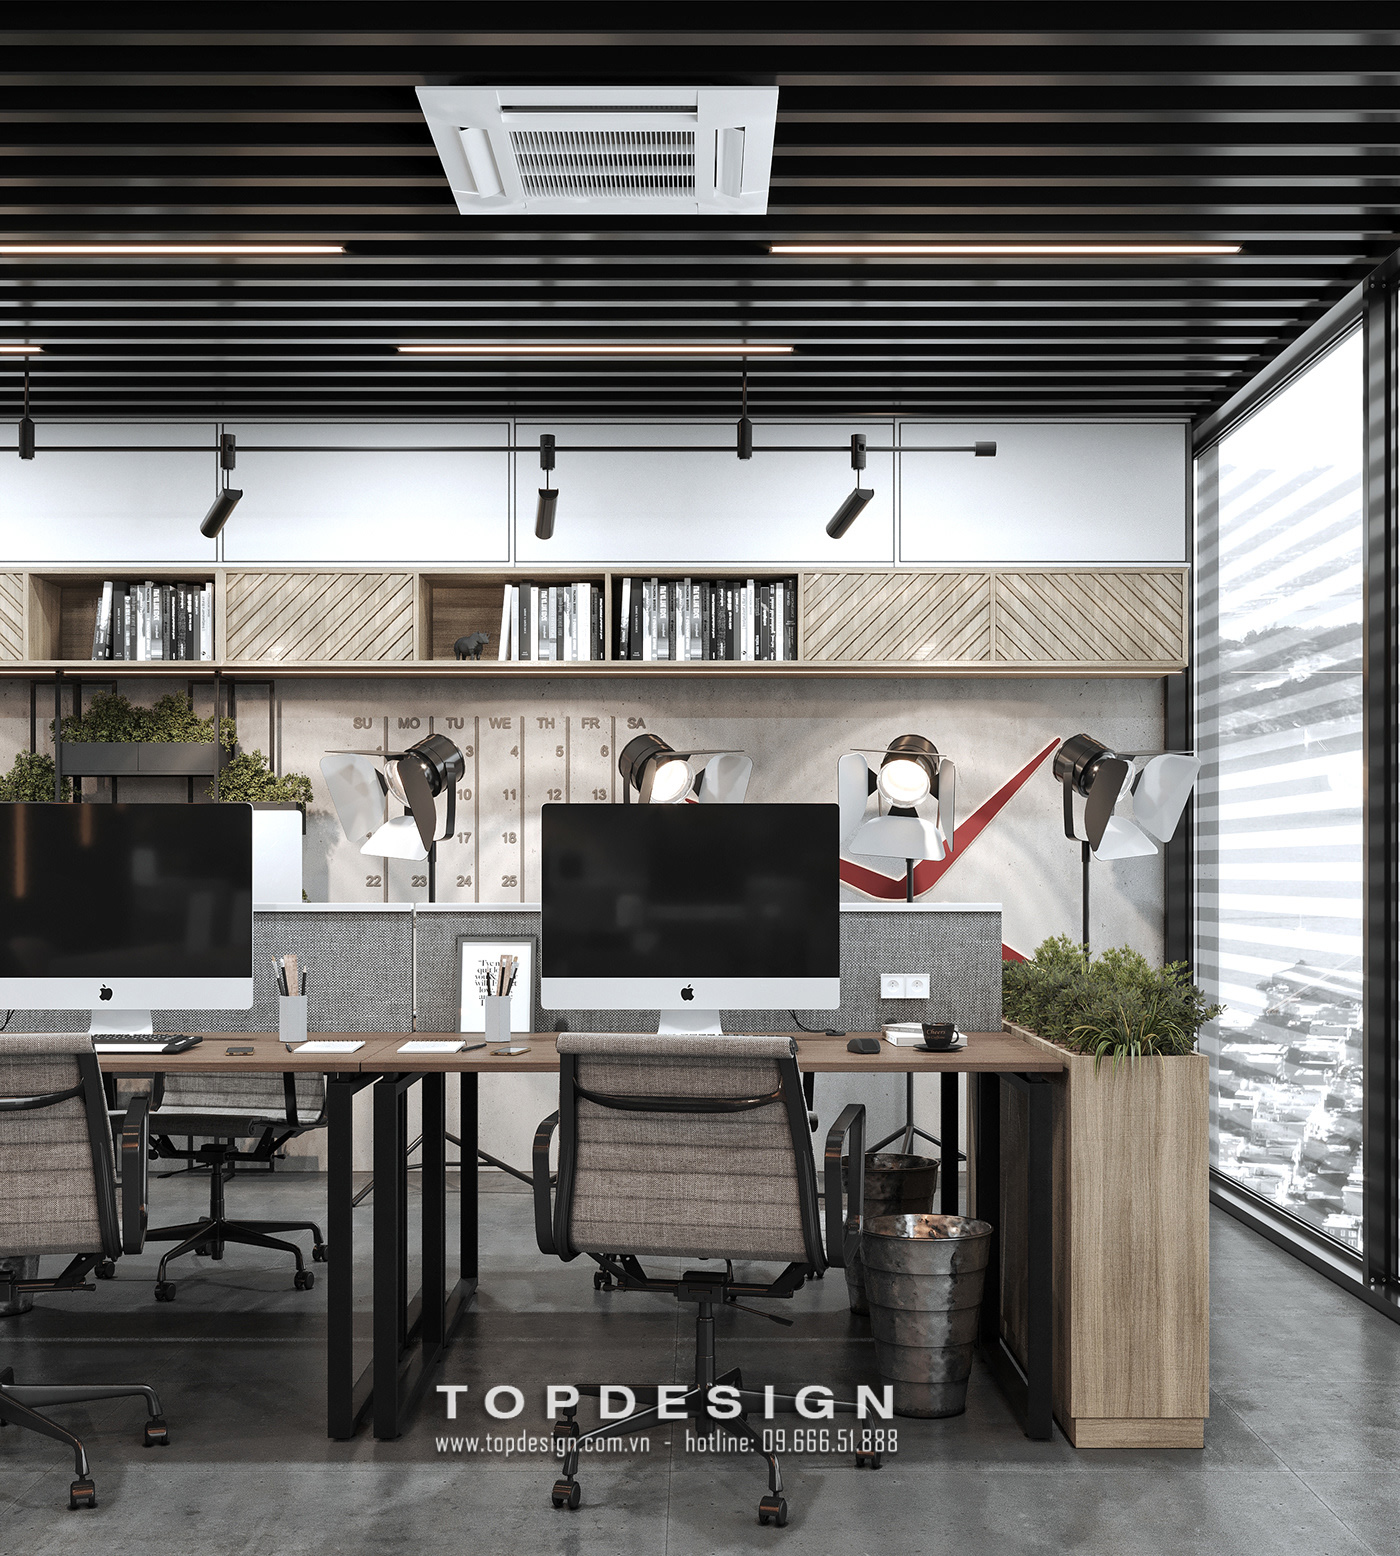 9.mẫu thiết kế decor văn phòng làm việc tri thức, sáng tạo_TOPDESIGN